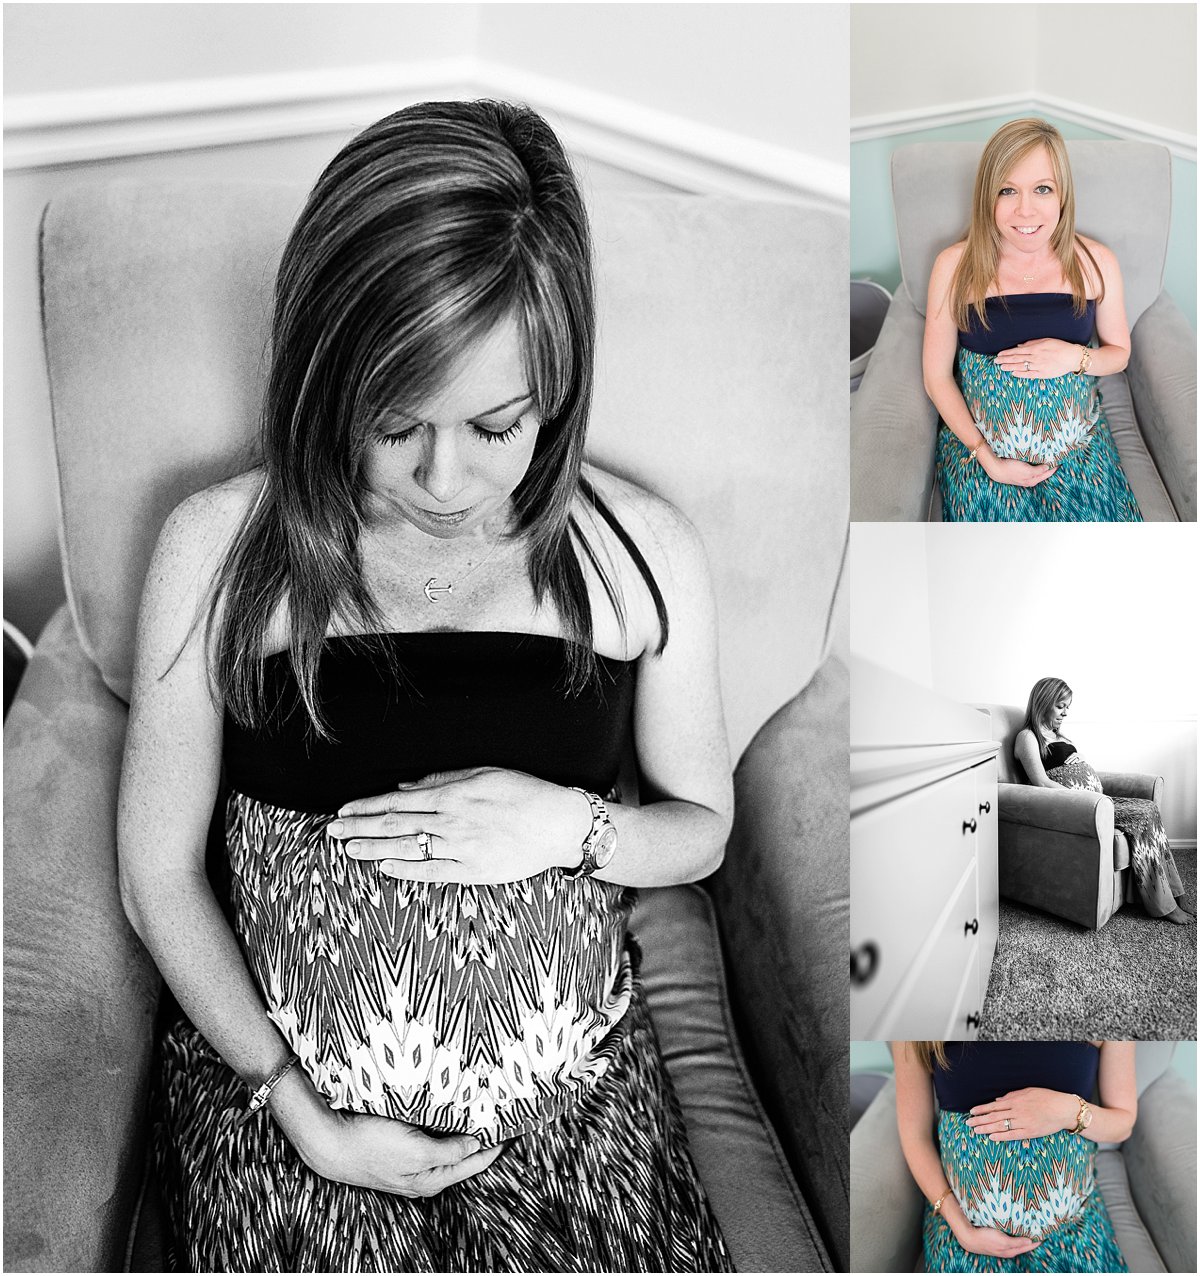 Orlando family photographer | lifestyle maternity photography